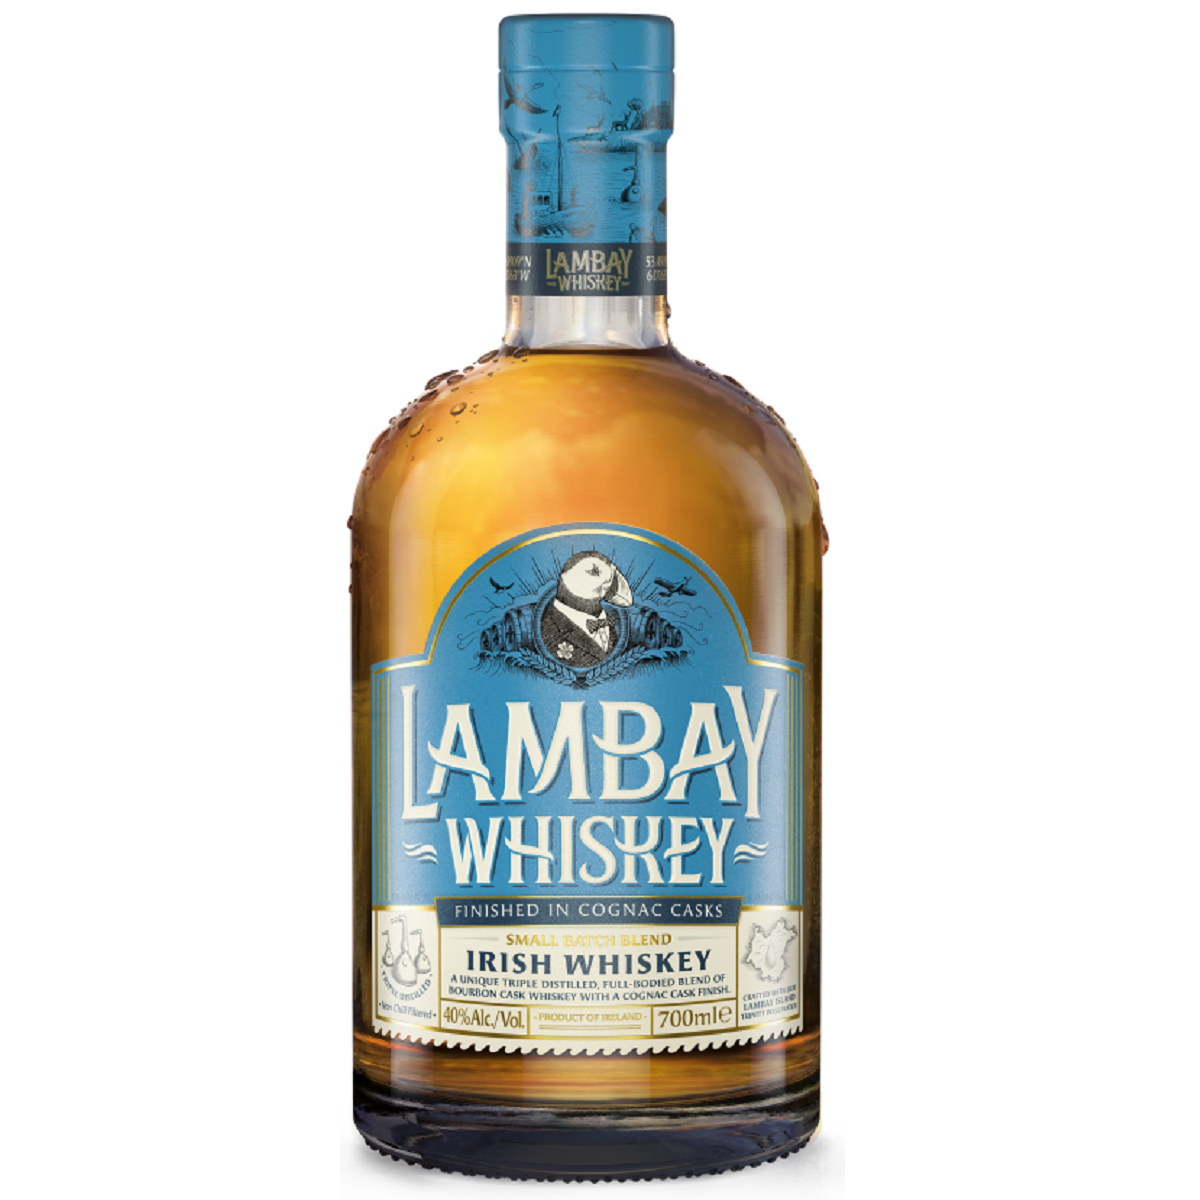 Lambay Irish Whiskey Small Batch Blend 700ml